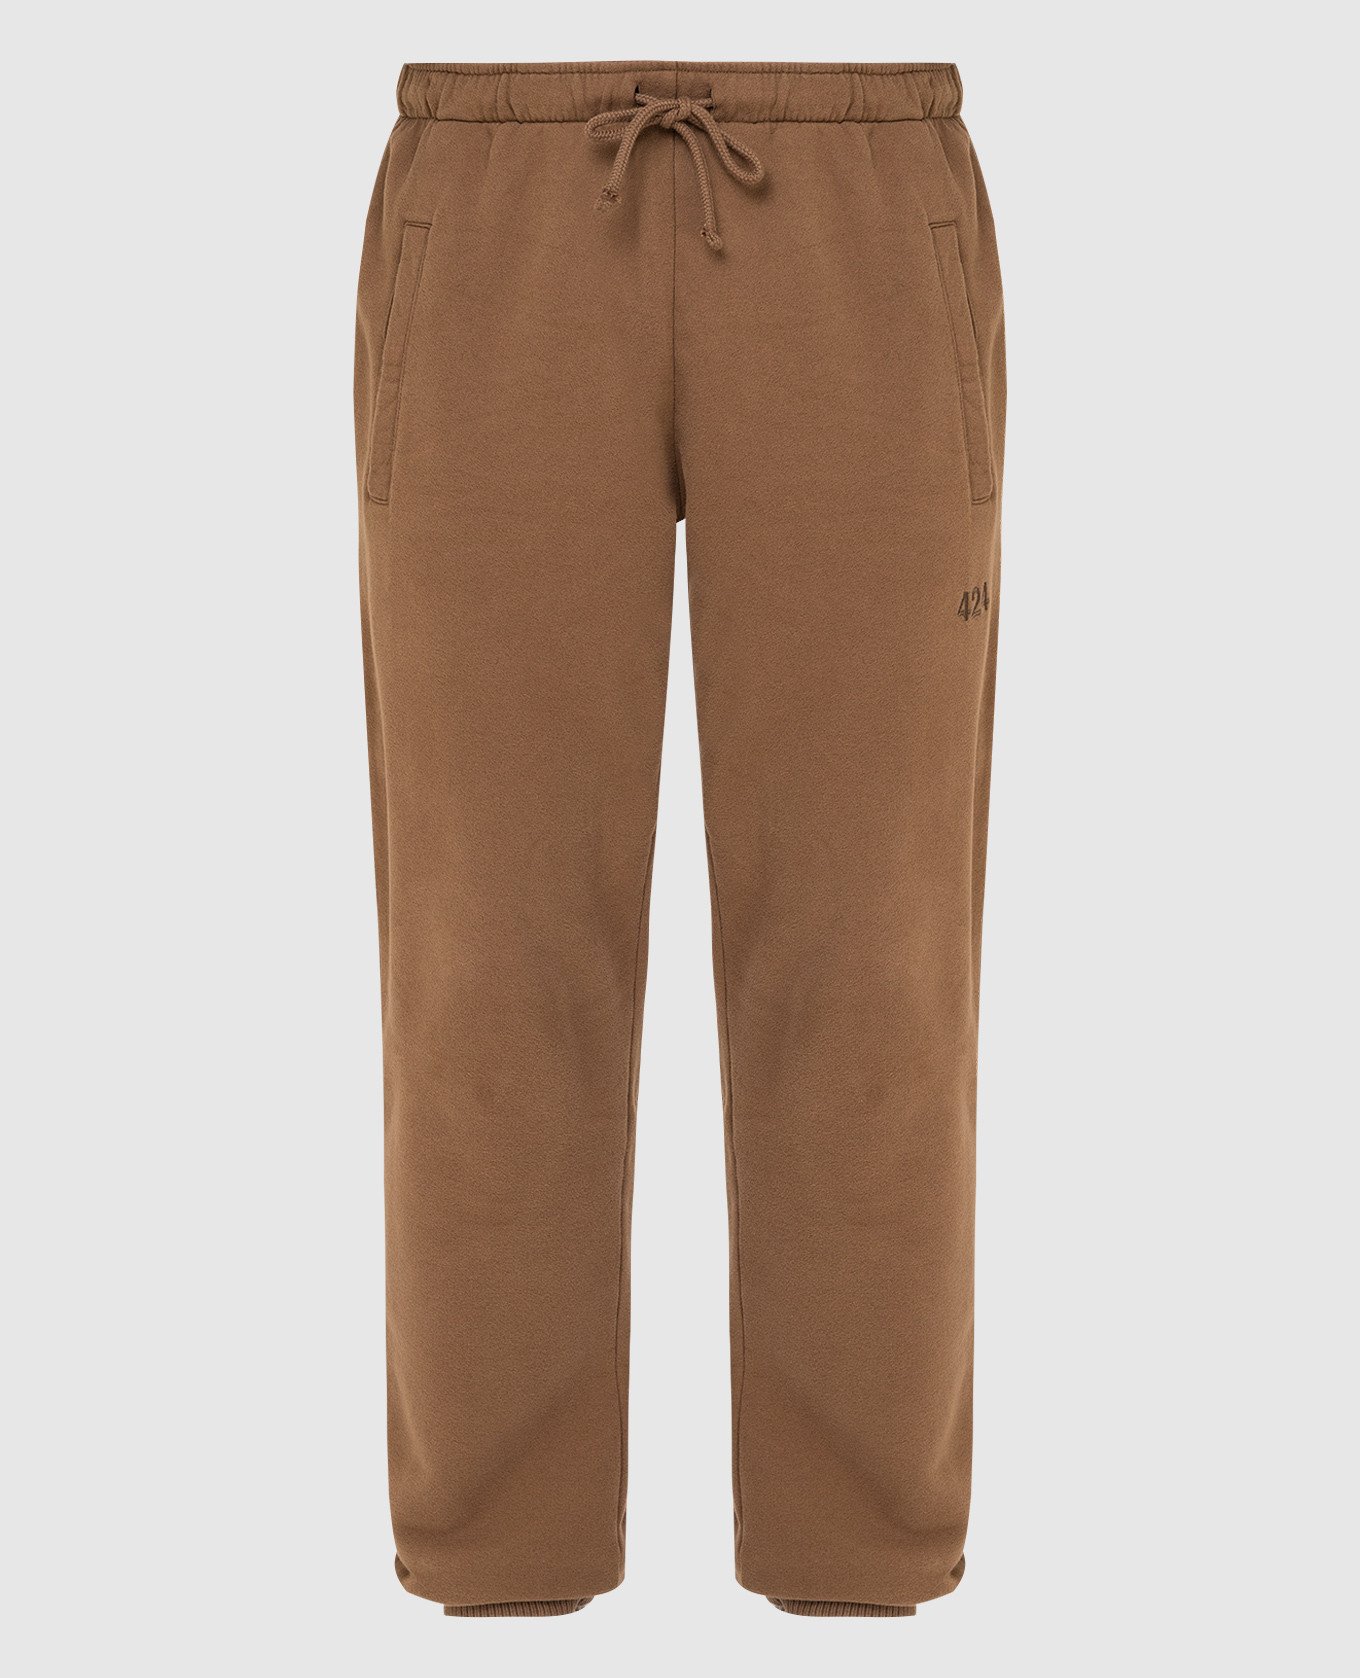 Светло-коричневые cпортивные брюки с вышивкой логотипа